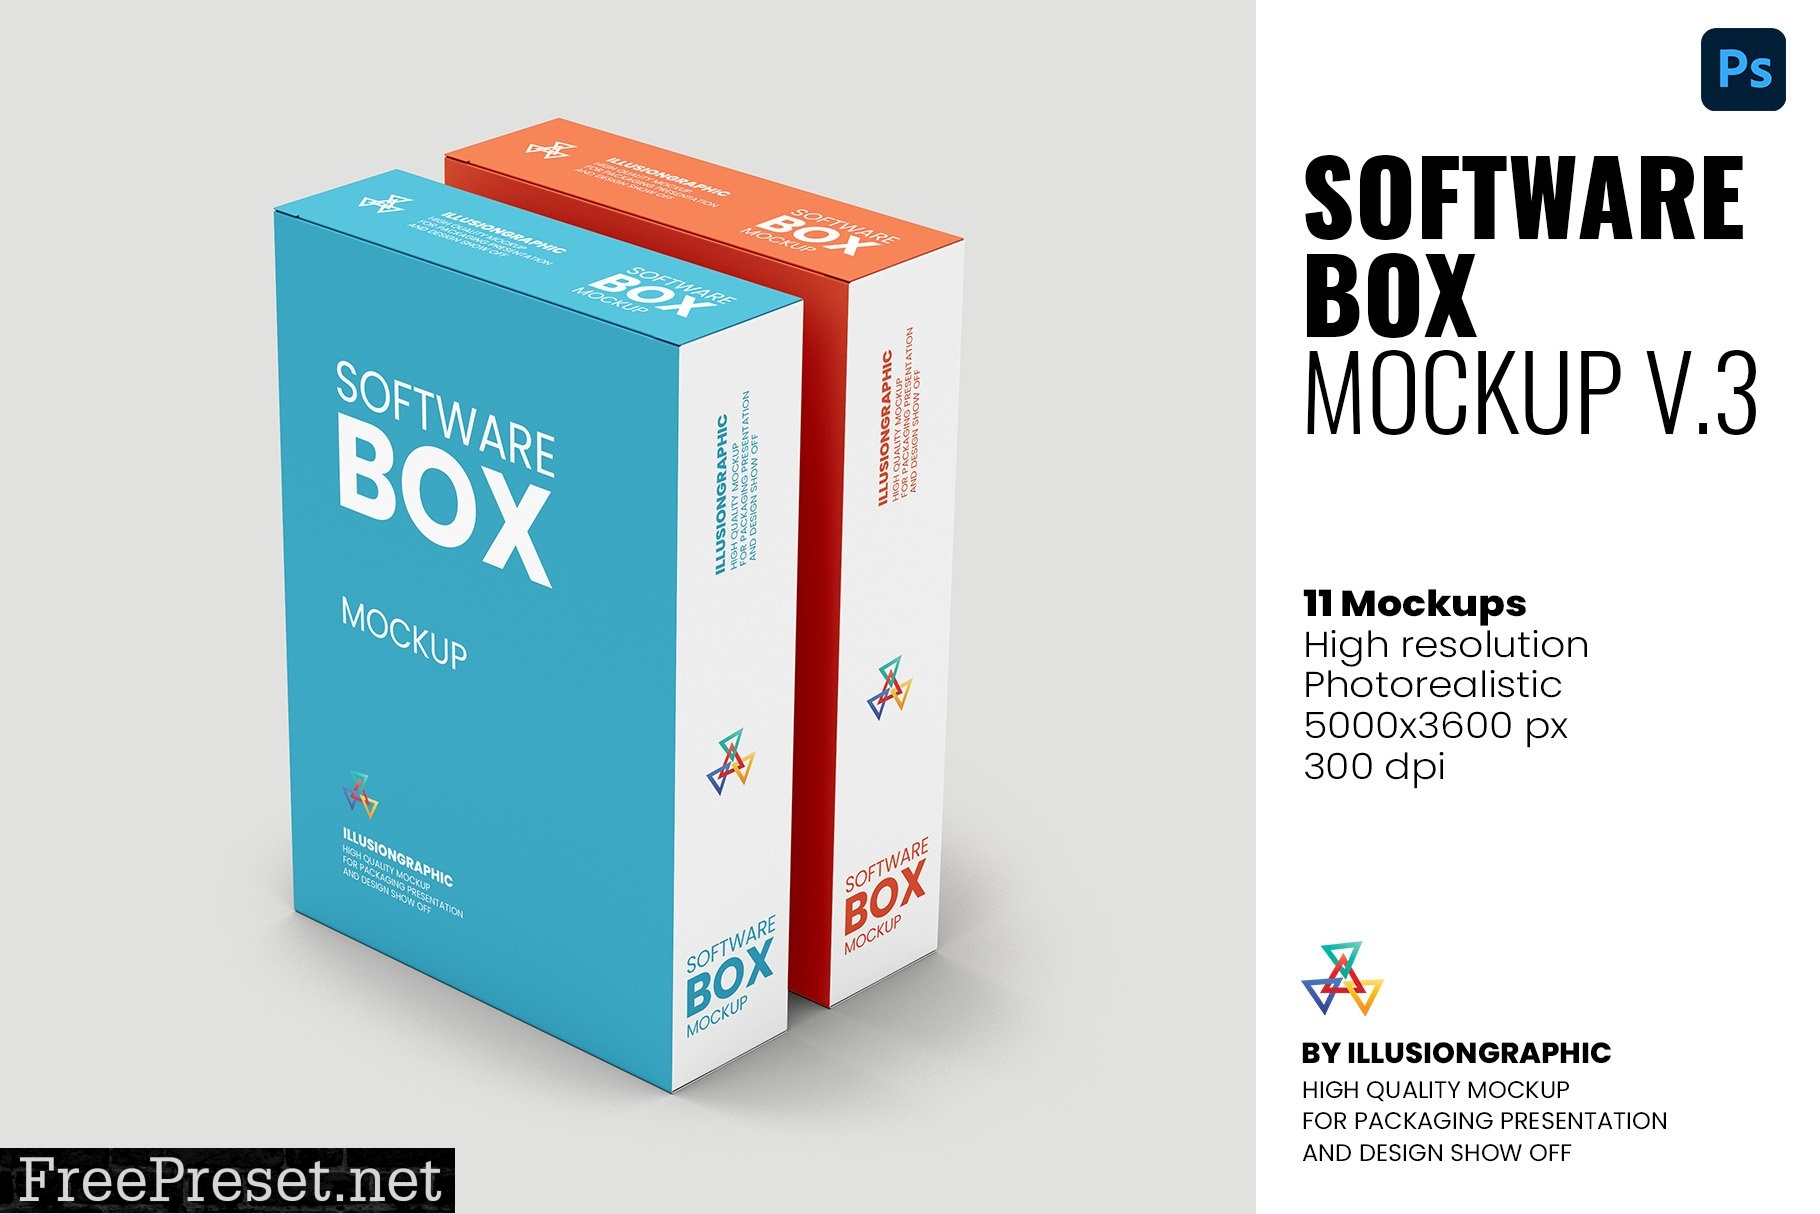 Software Box Mockup v.3 - 11 Views 5964573